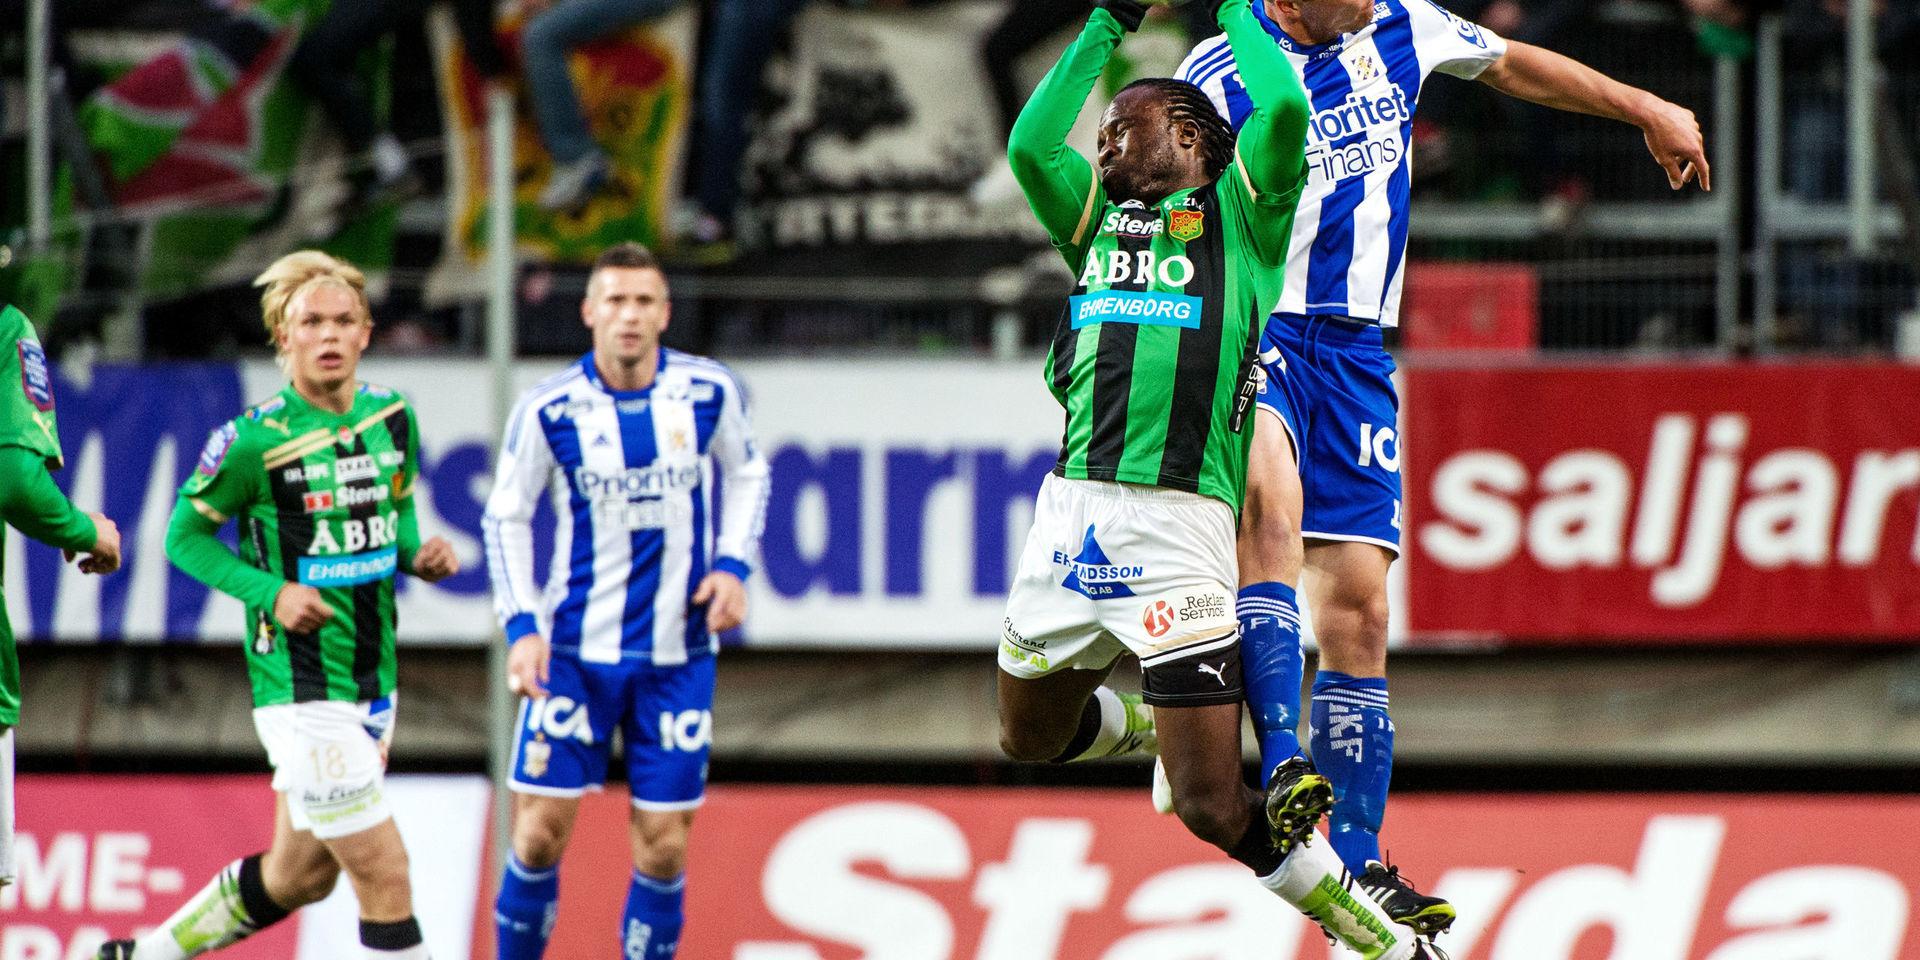 Senast IFK Göteborg och Gais möttes var 2012. 